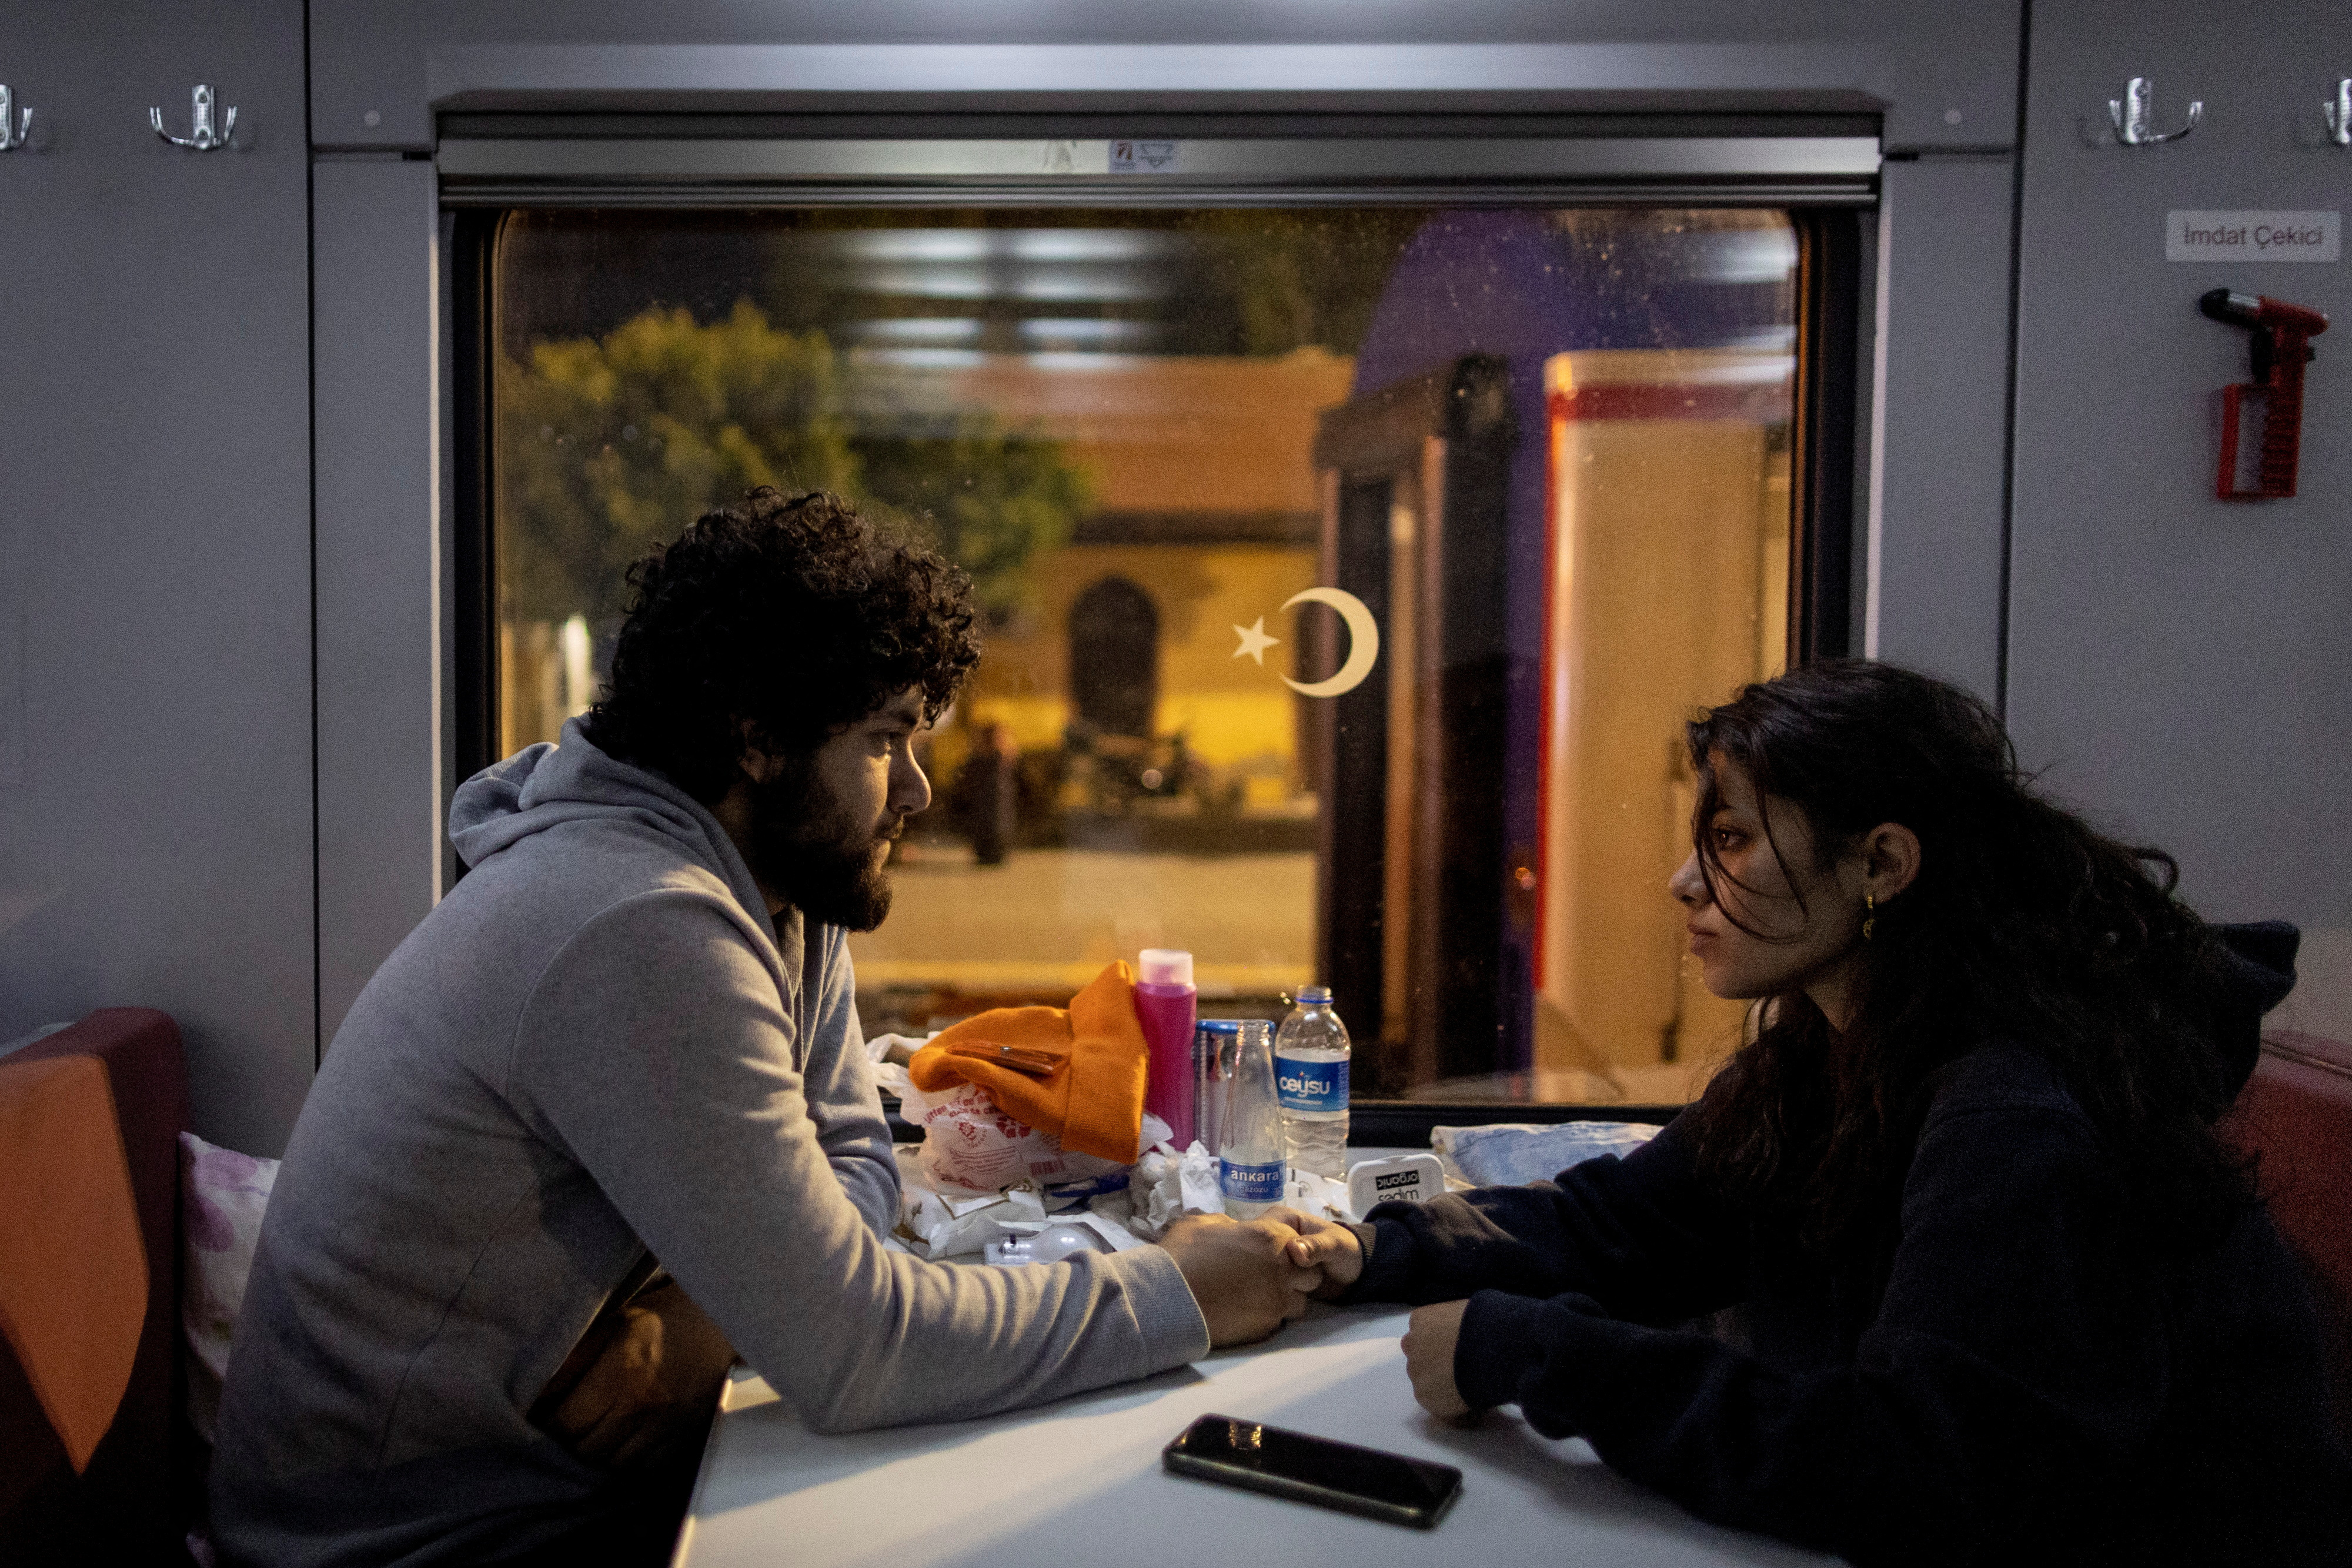 Una imagen más amplia: familias turcas se refugian en un tren después de que el terremoto paralizara la vida